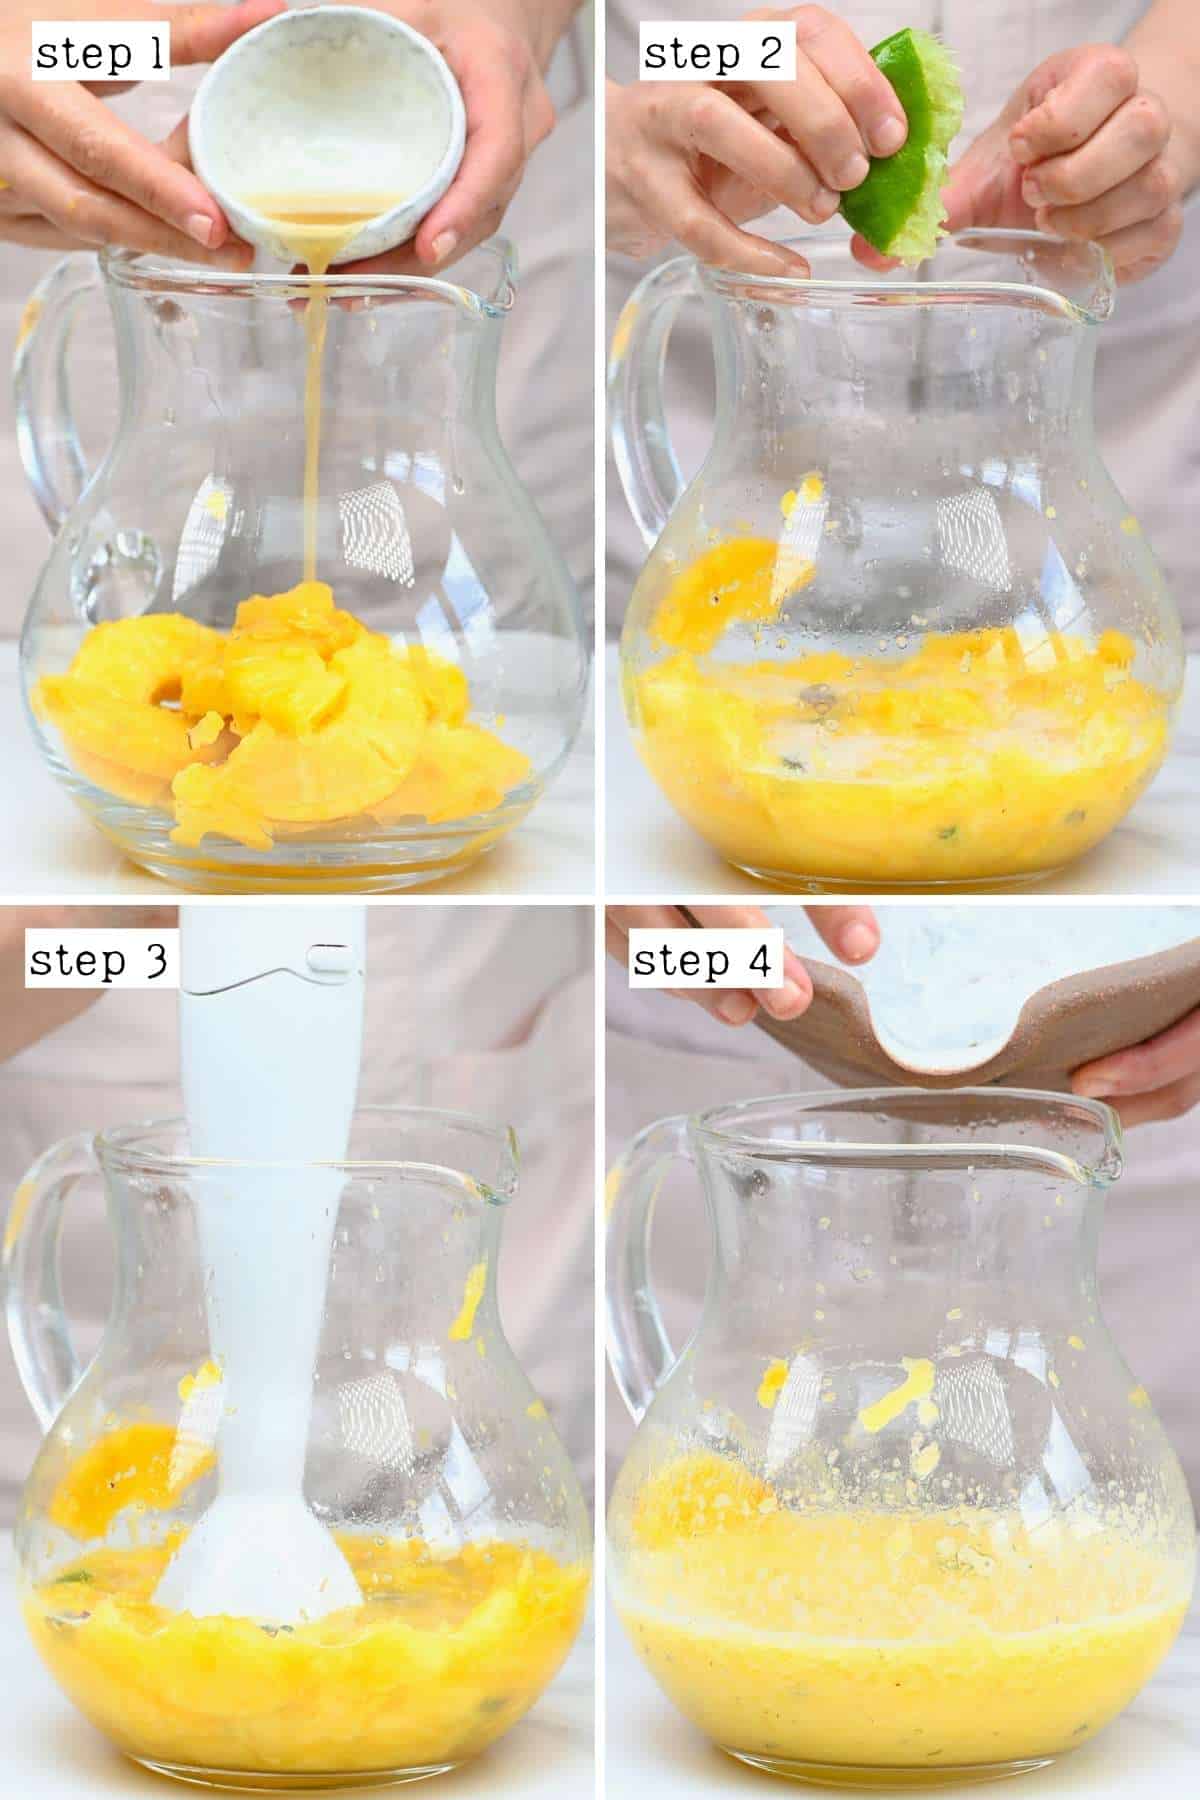 Steps for making pineapple limeade